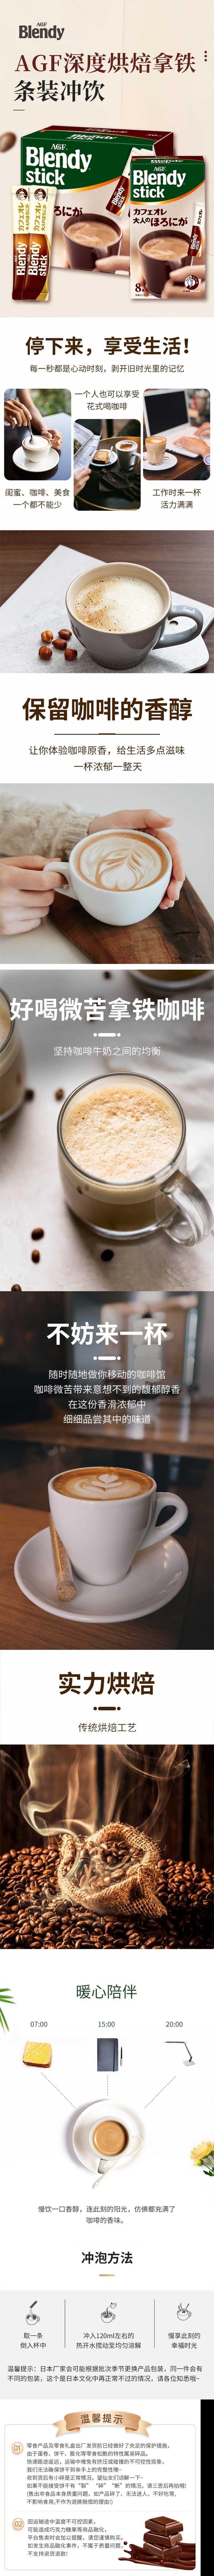 【日本直邮】AGF blendy stick棒状深度烘焙牛奶咖啡 27枚